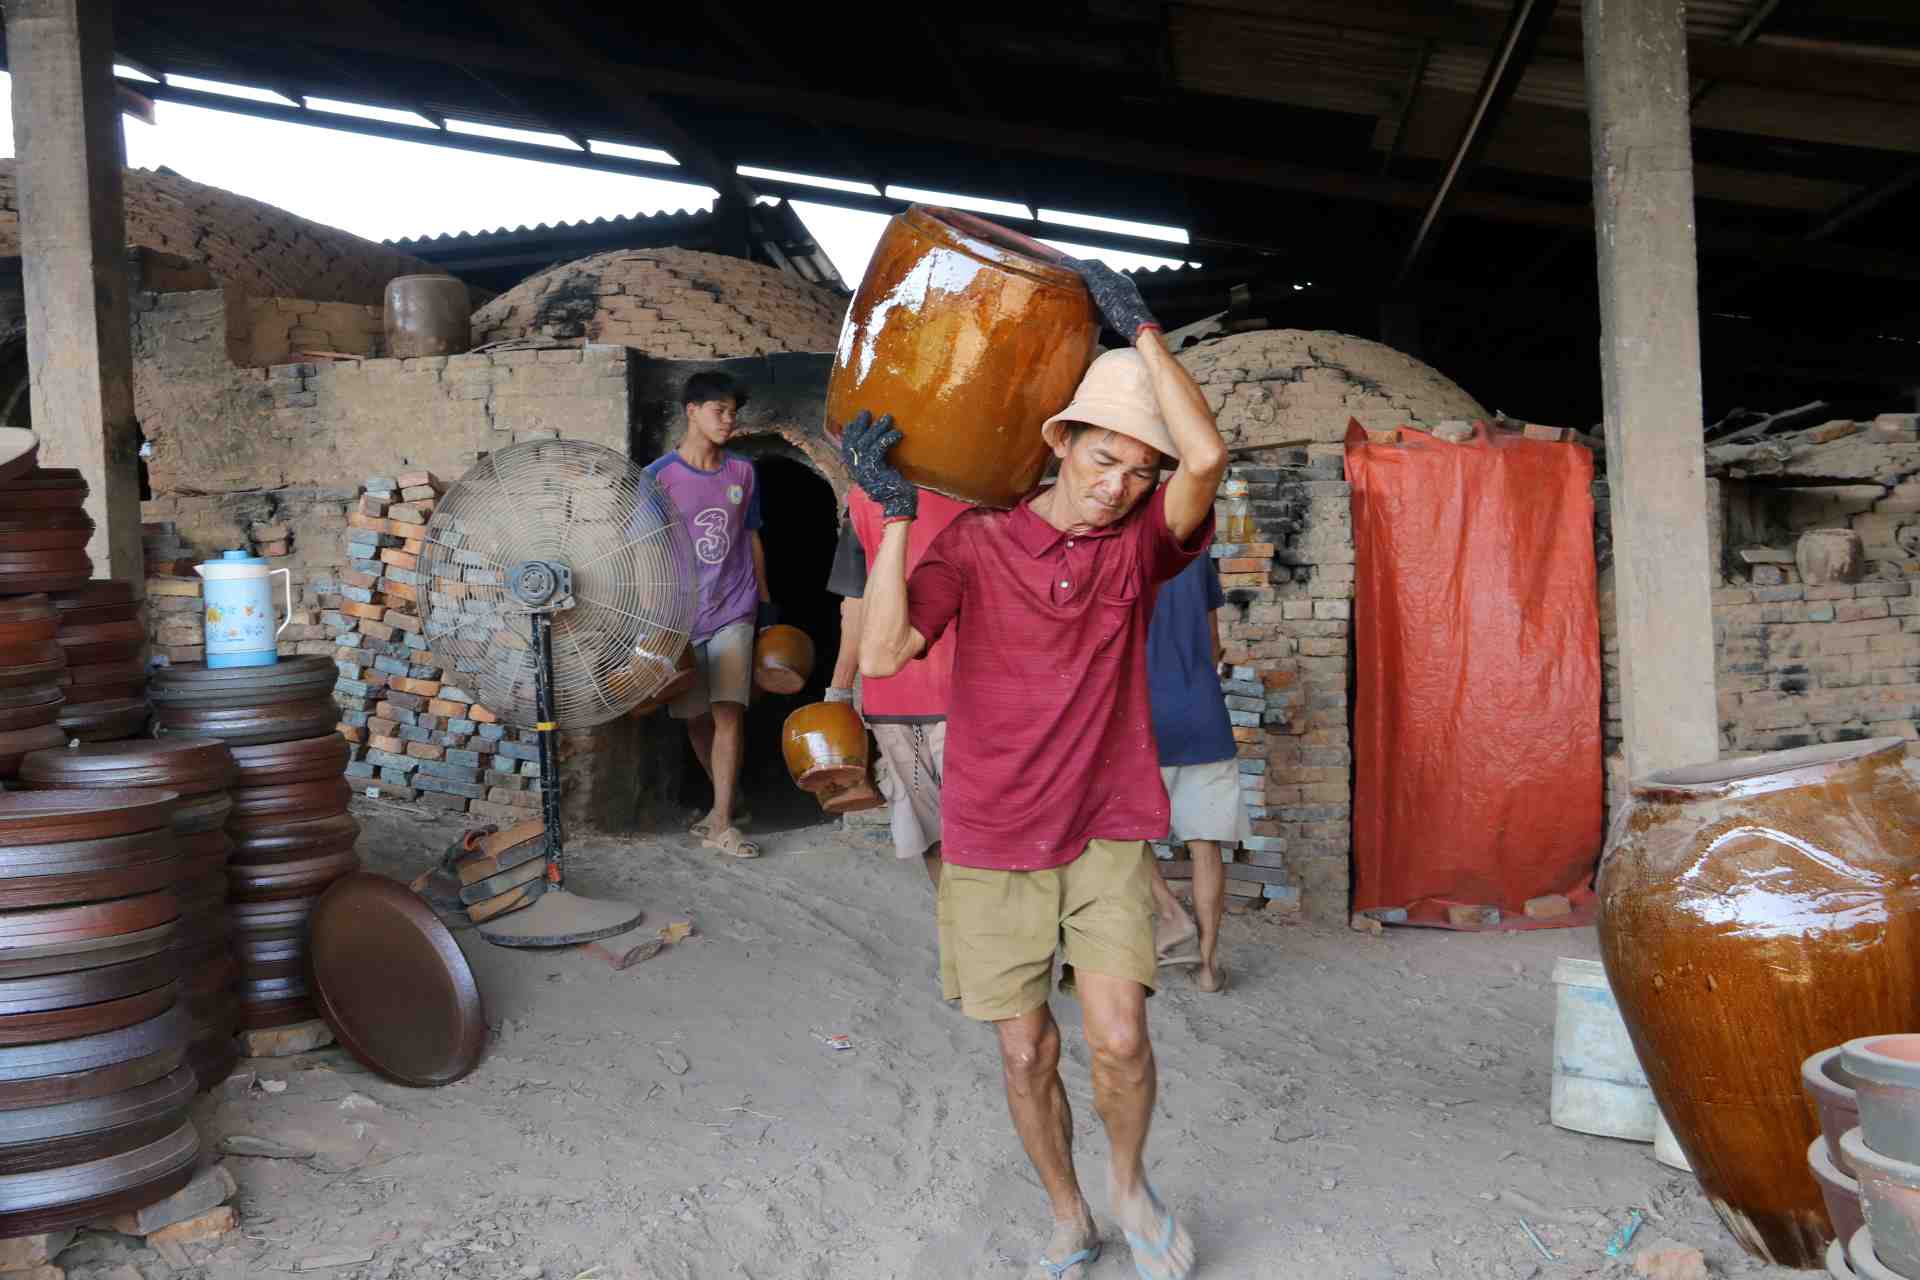 Ông Bùi Văn Giang (70 tuổi, chủ lò lu Đại Hưng) cho biết mỗi ngày lò lu cung cấp cho thị trường khoảng 400 sản phẩm (lu, hũ, khạp lớn nhỏ). “Lu này sẽ đem đi tiêu thu ở Miền Tây, Campuchia, miền Trung và cả ngoài Hà Nội. 